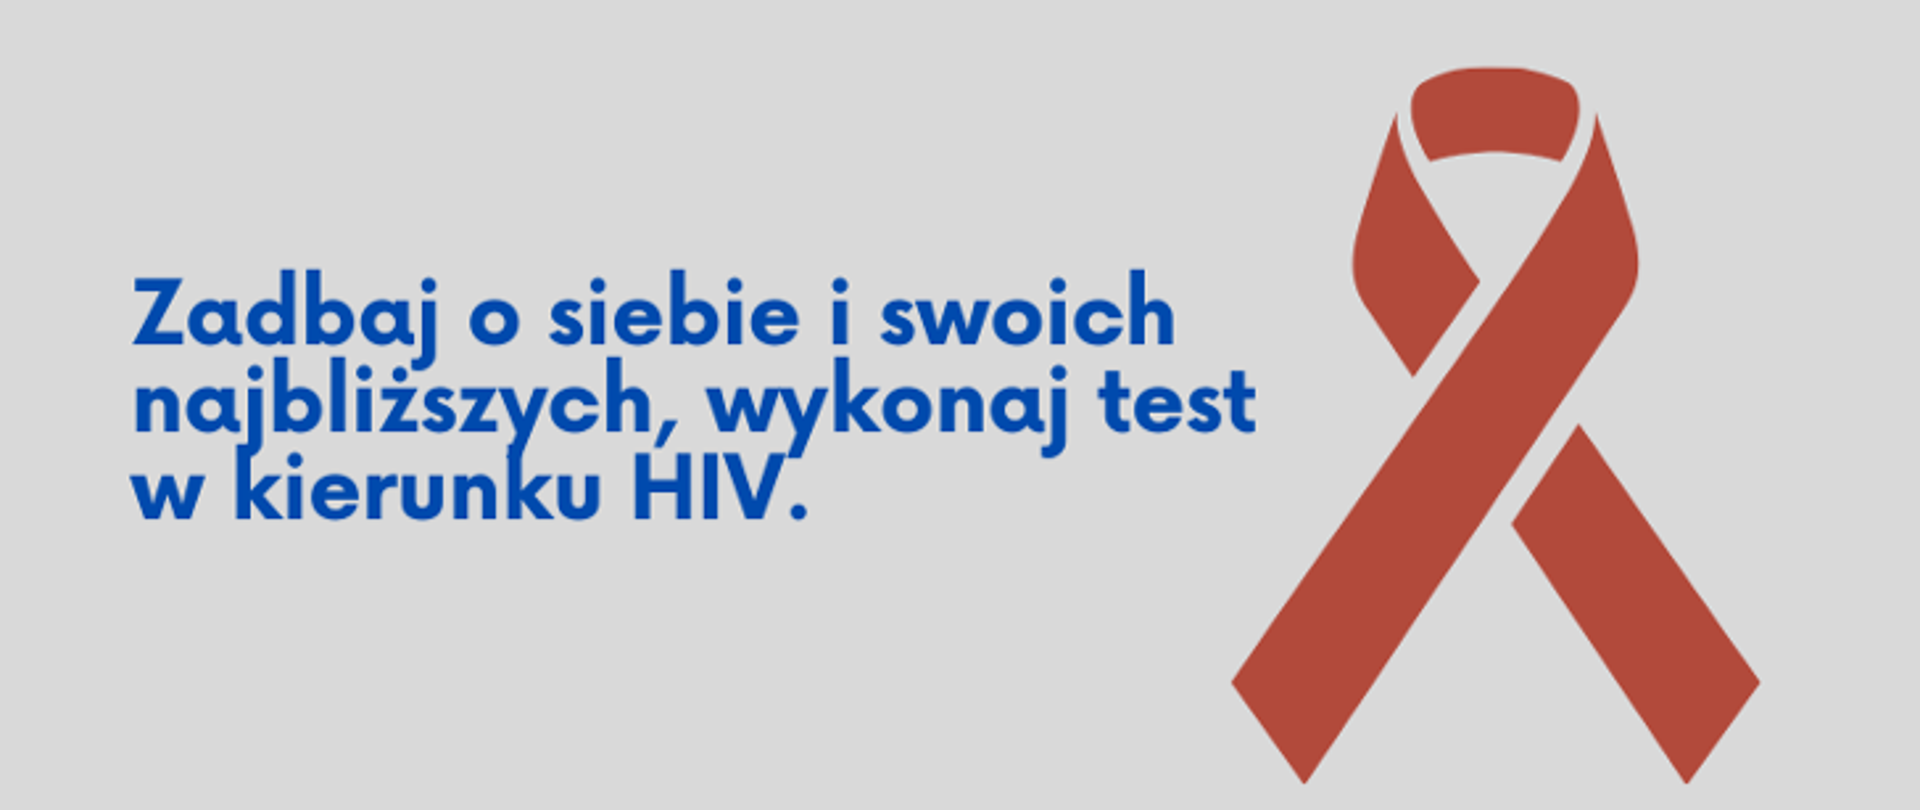 Wykonaj test w kierunku HIV